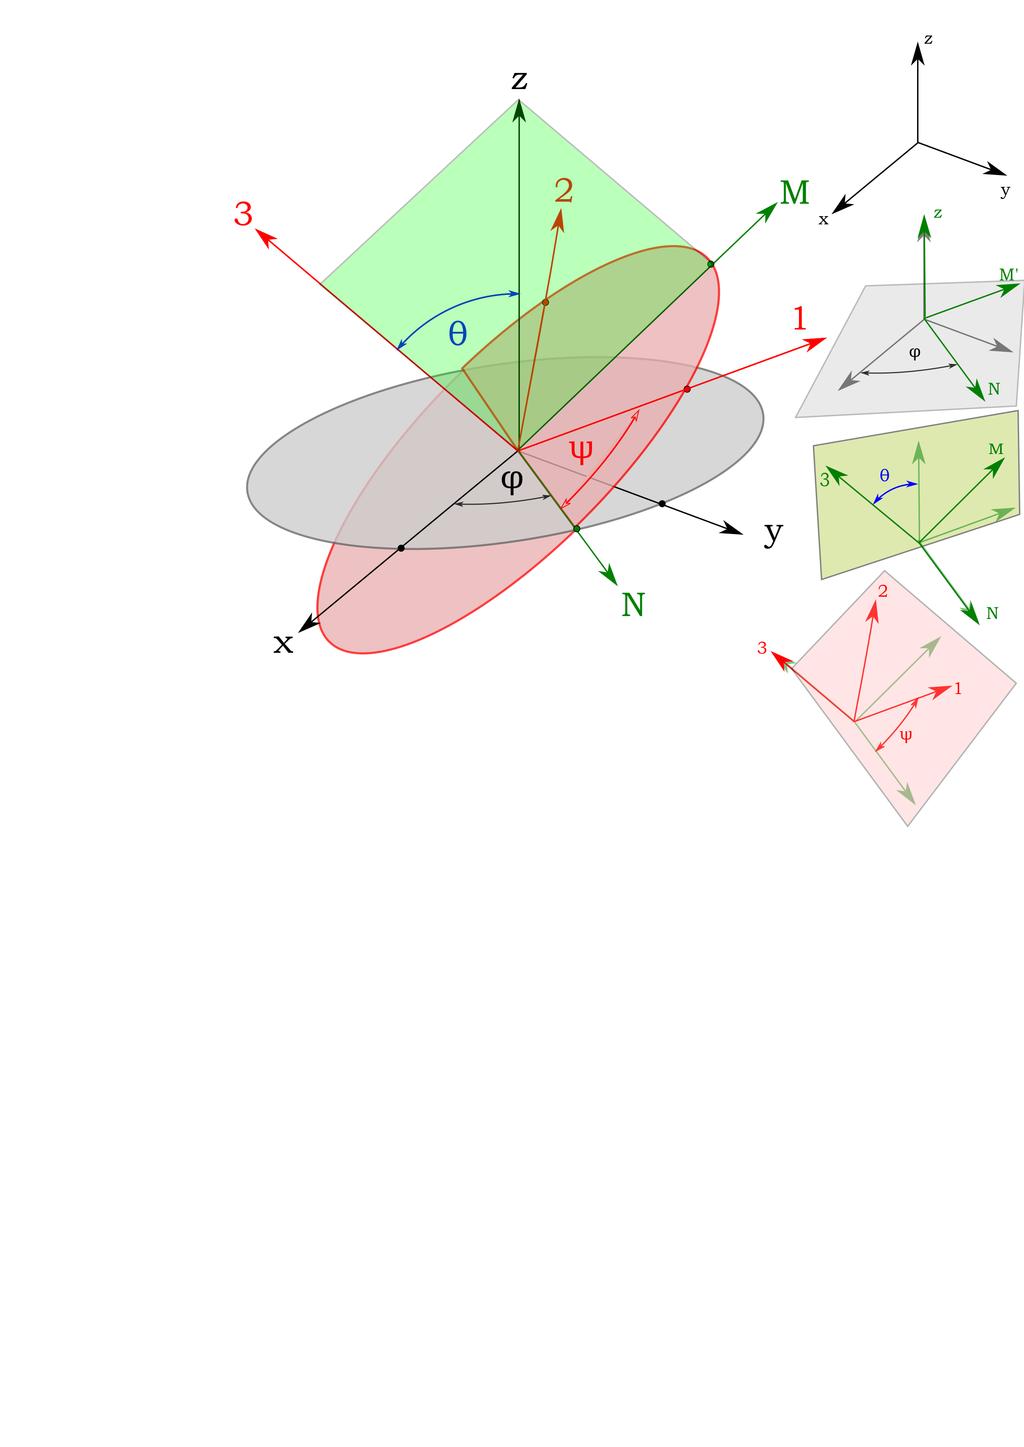 Σχήμα 5: Οι τρεις γωνίες του Euler ϕ, θ, ψ που στρίβουν τους άξονες από το σύστημα xyz στο σύστημα του στερεού 13.